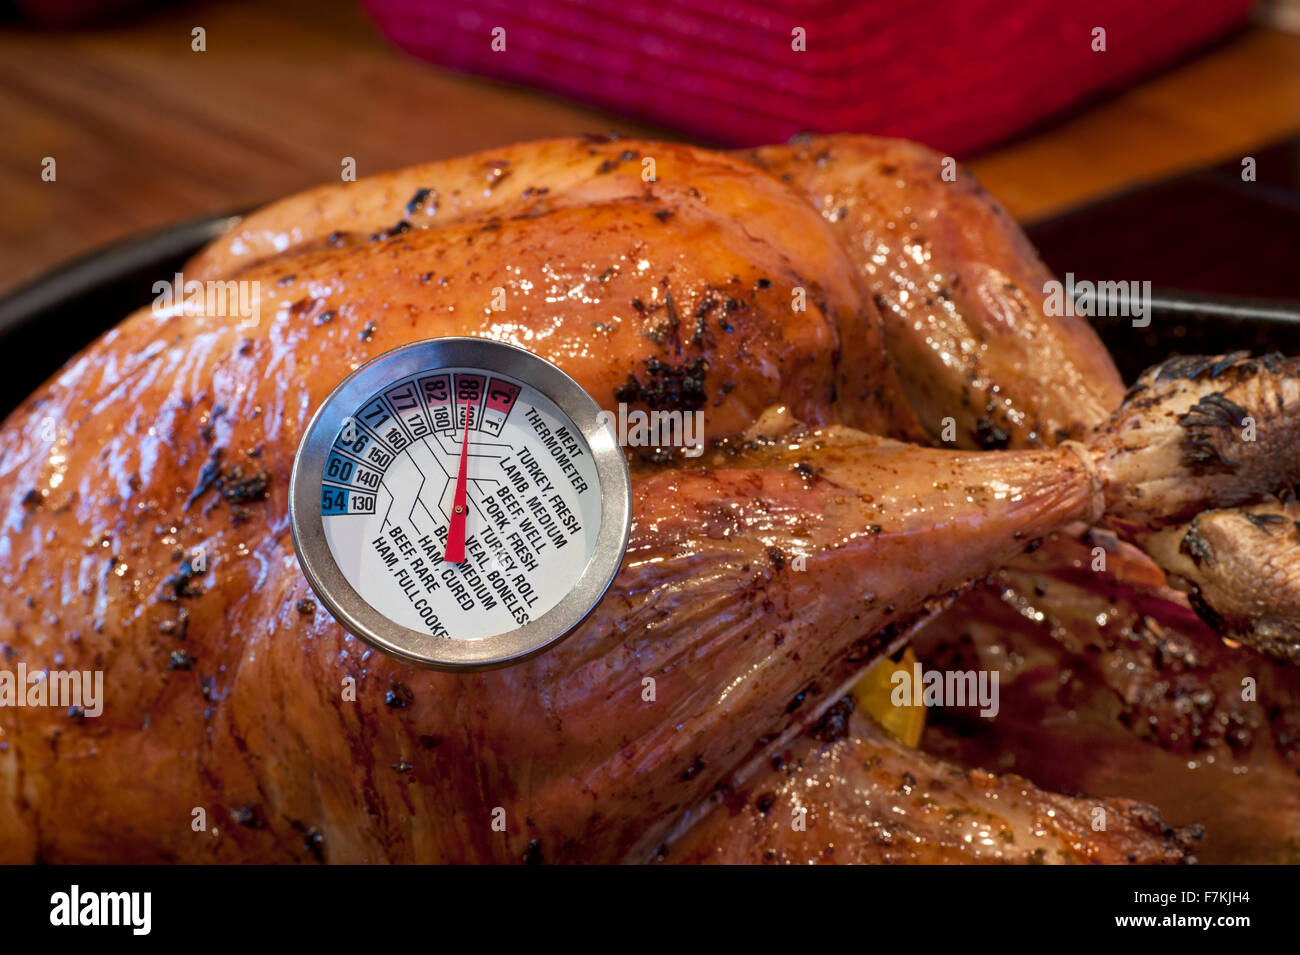 PUTENTHERMOMETER RÖSTTEMPERATUR Kochfleischthermometer eingesetzt, das die ideale Temperatur (190F °C) für gekochten Putenbraten an Weihnachten anzeigt Stockfoto